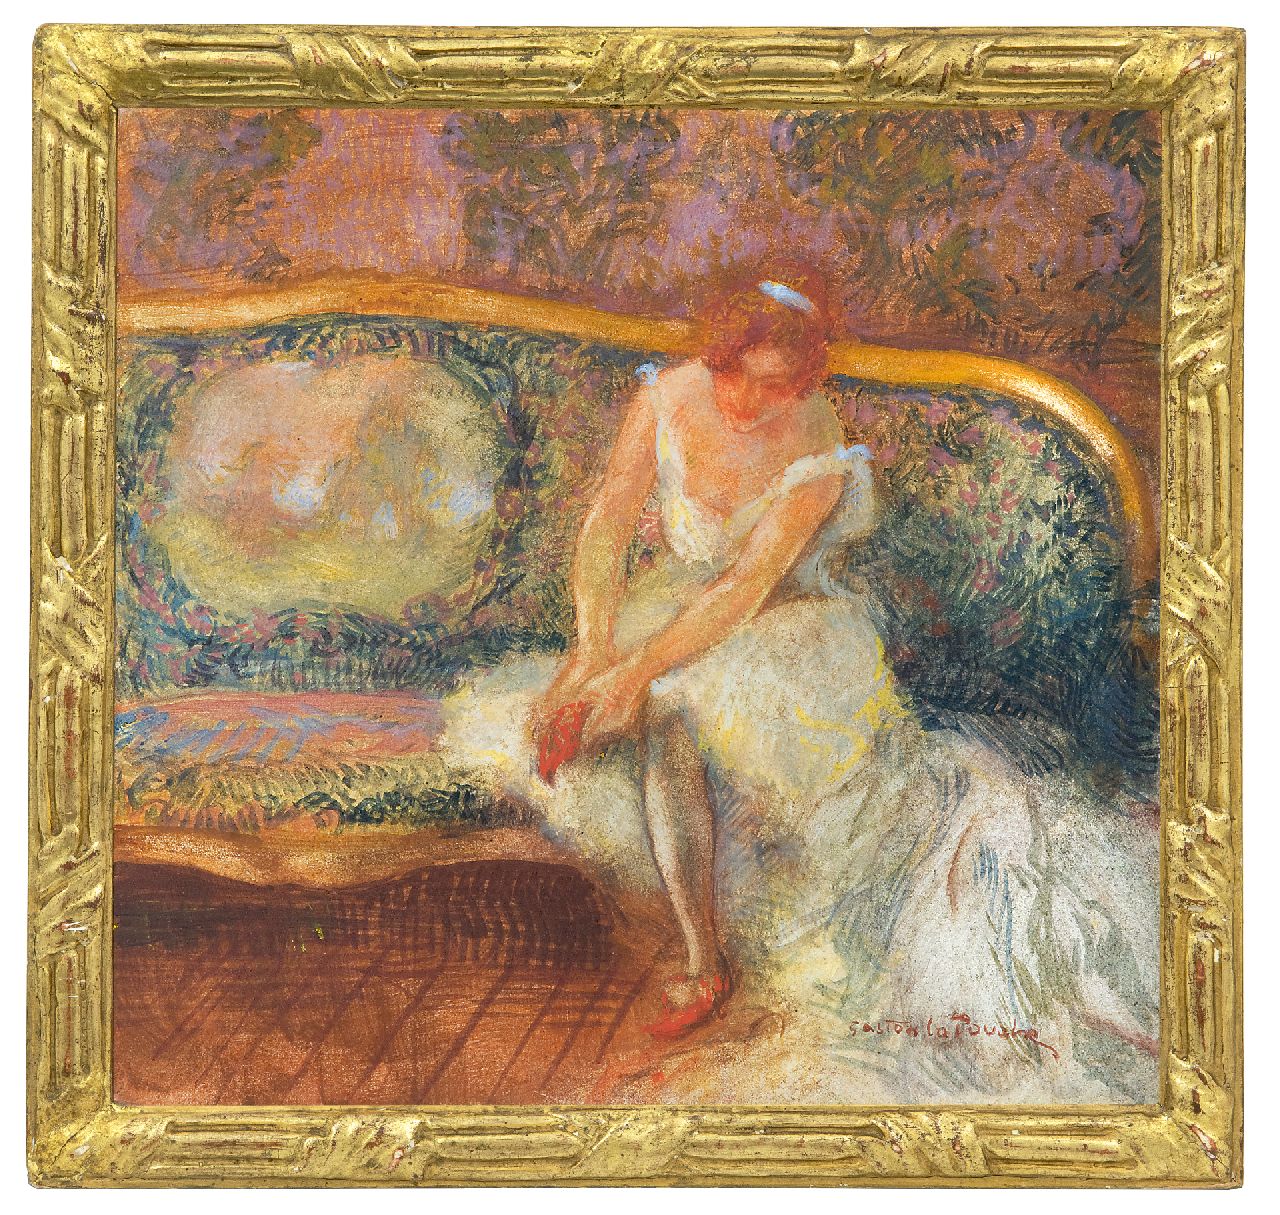 La Touche G.  | Gaston La Touche, Seated ballerina, crayon and gouache on board 23.1 x 24.3 cm, signed l.r.